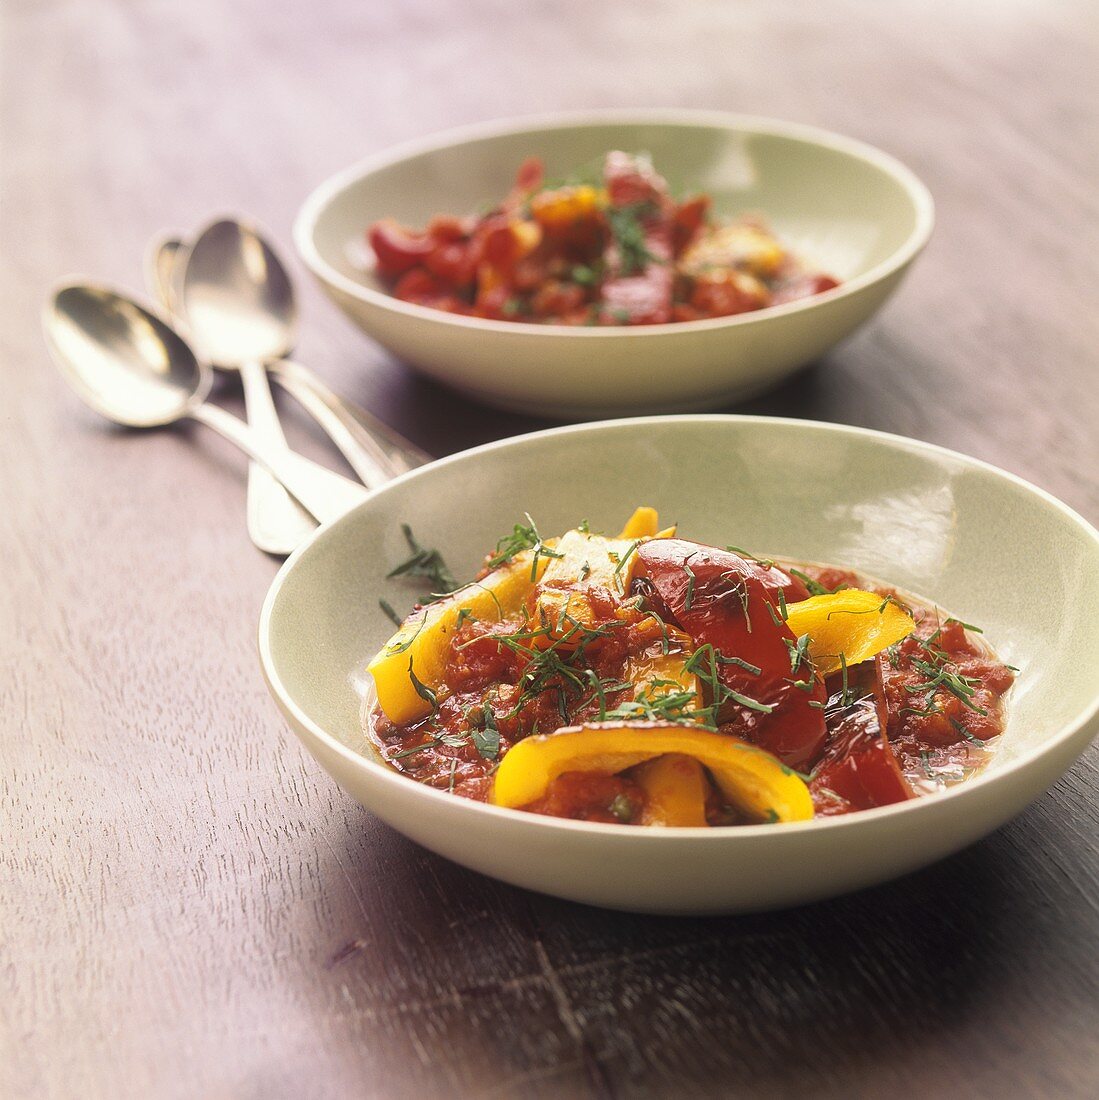 Peperonata pugliese (Paprikagemüse mit Tomatensauce, Italien)